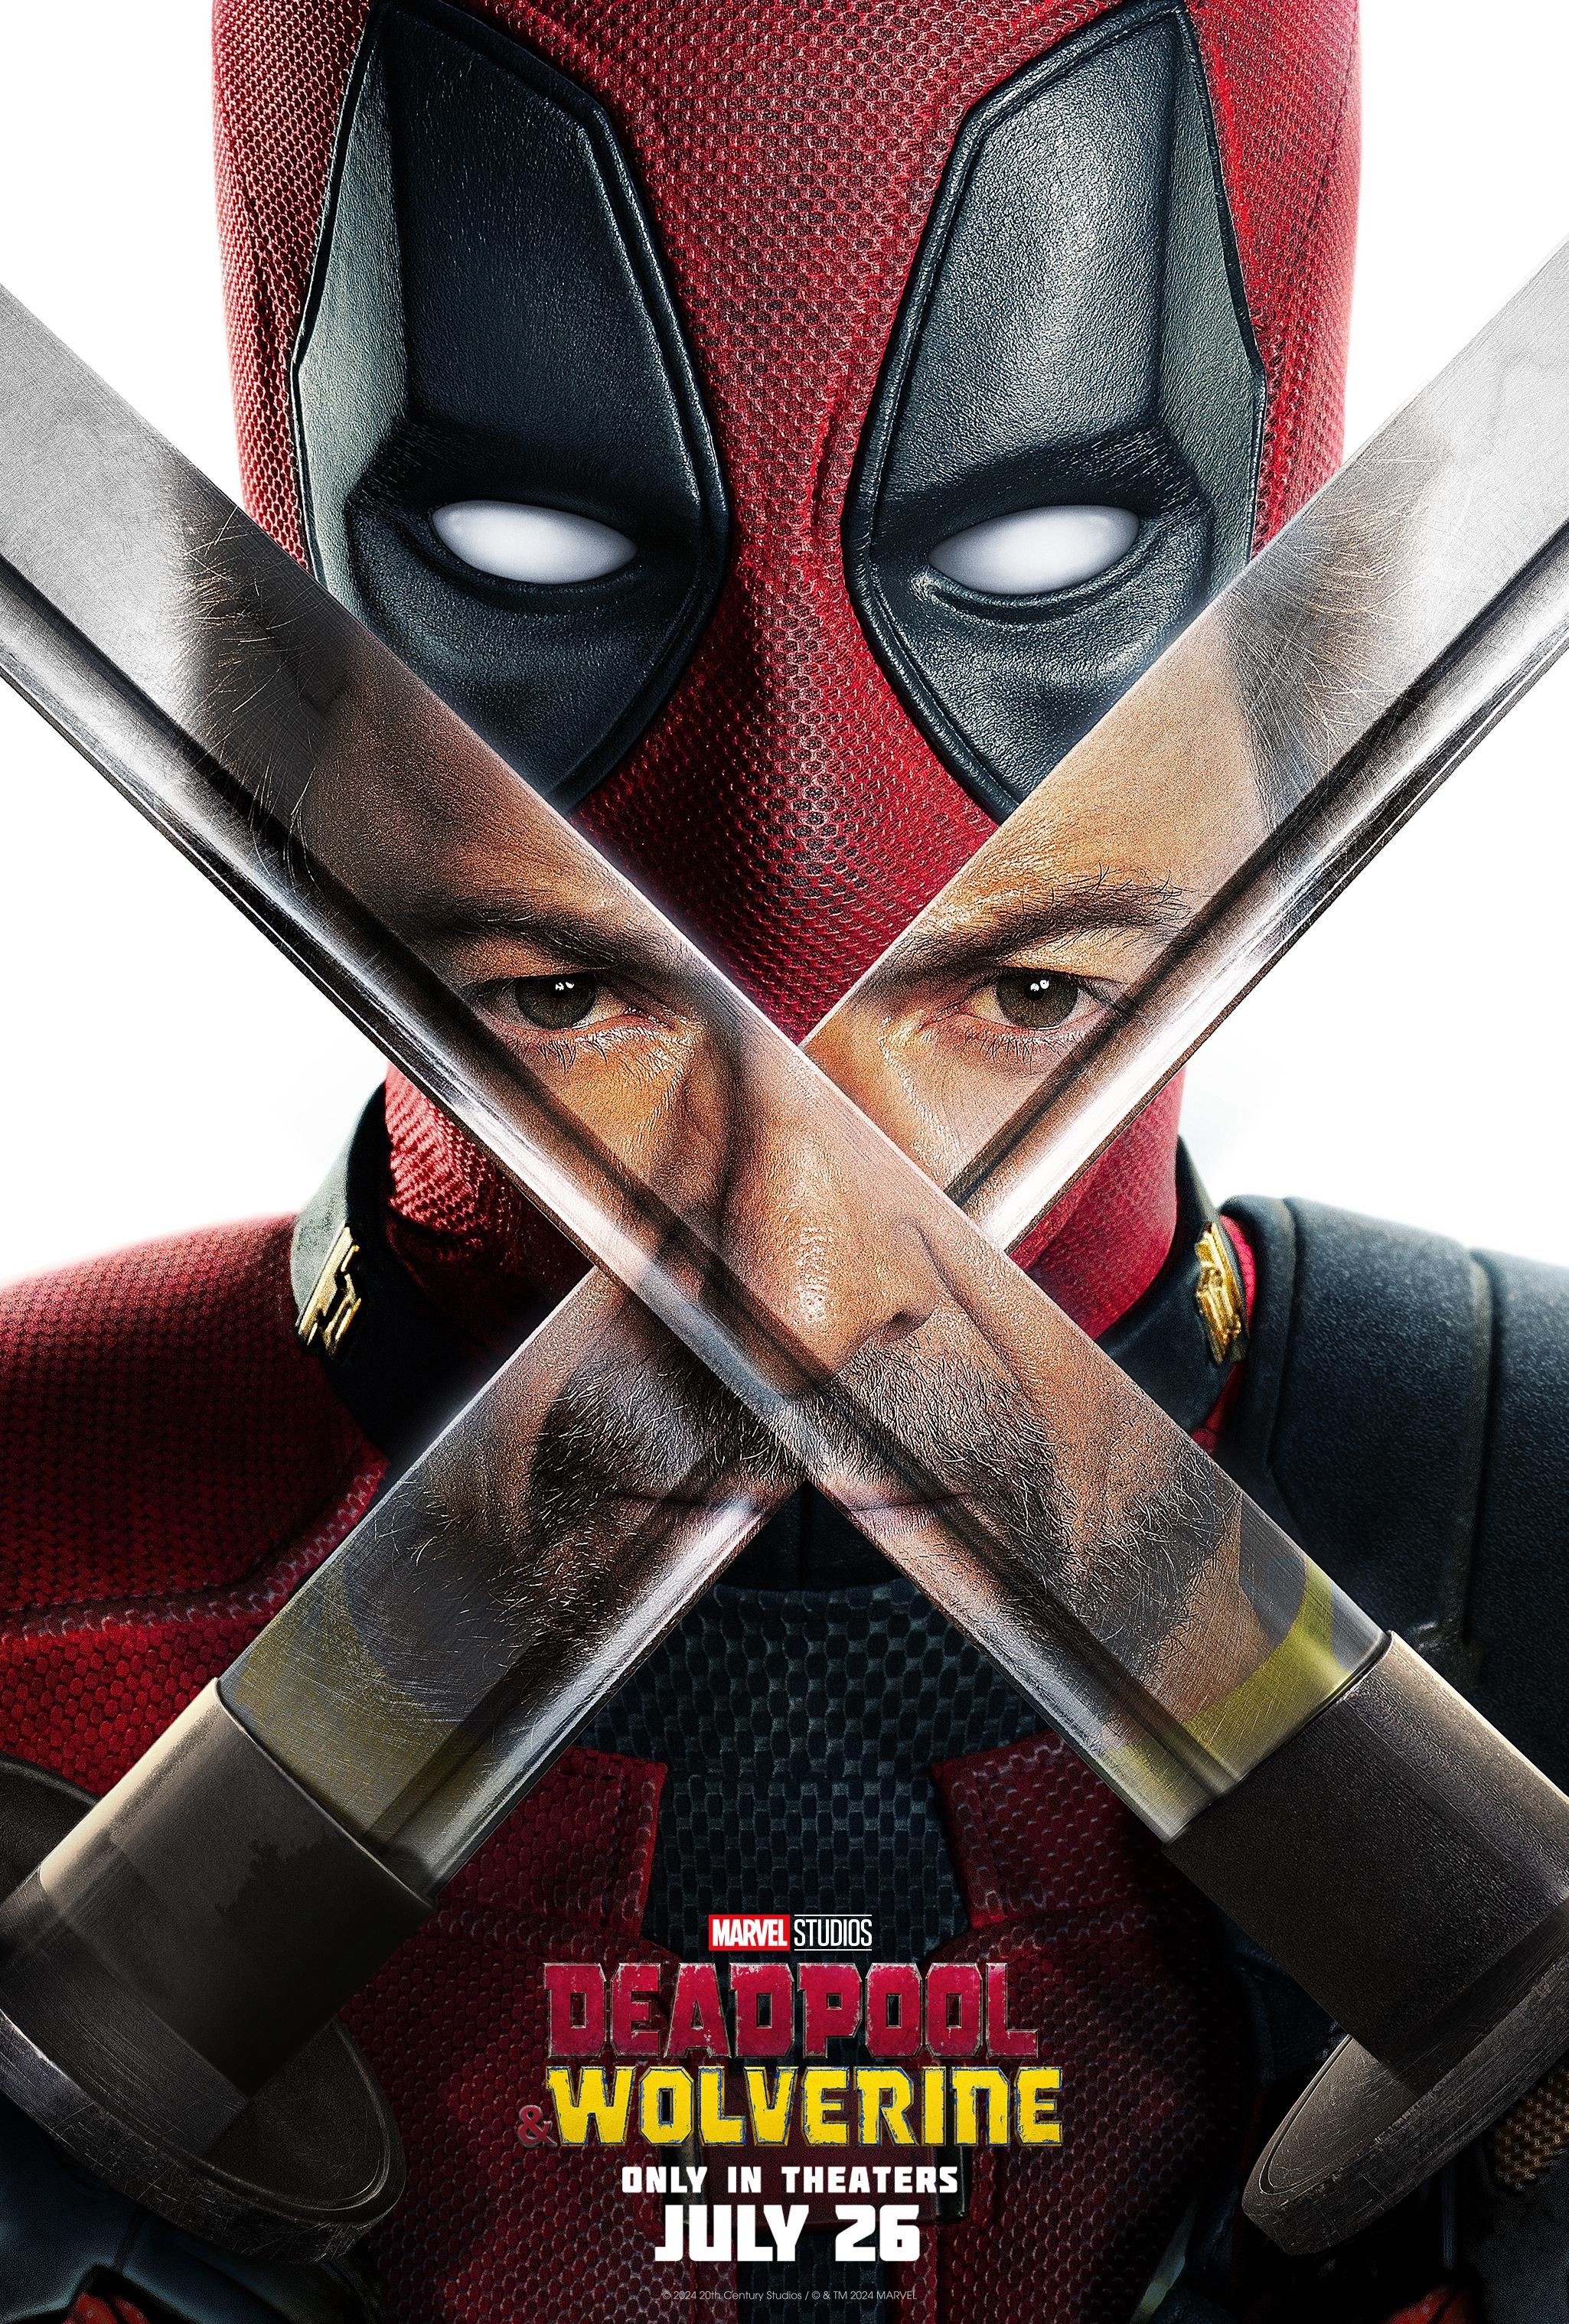 Póster de Deadpool y Wolverine que muestra las espadas de Wade Wilson y el reflejo de Hugh Jackman